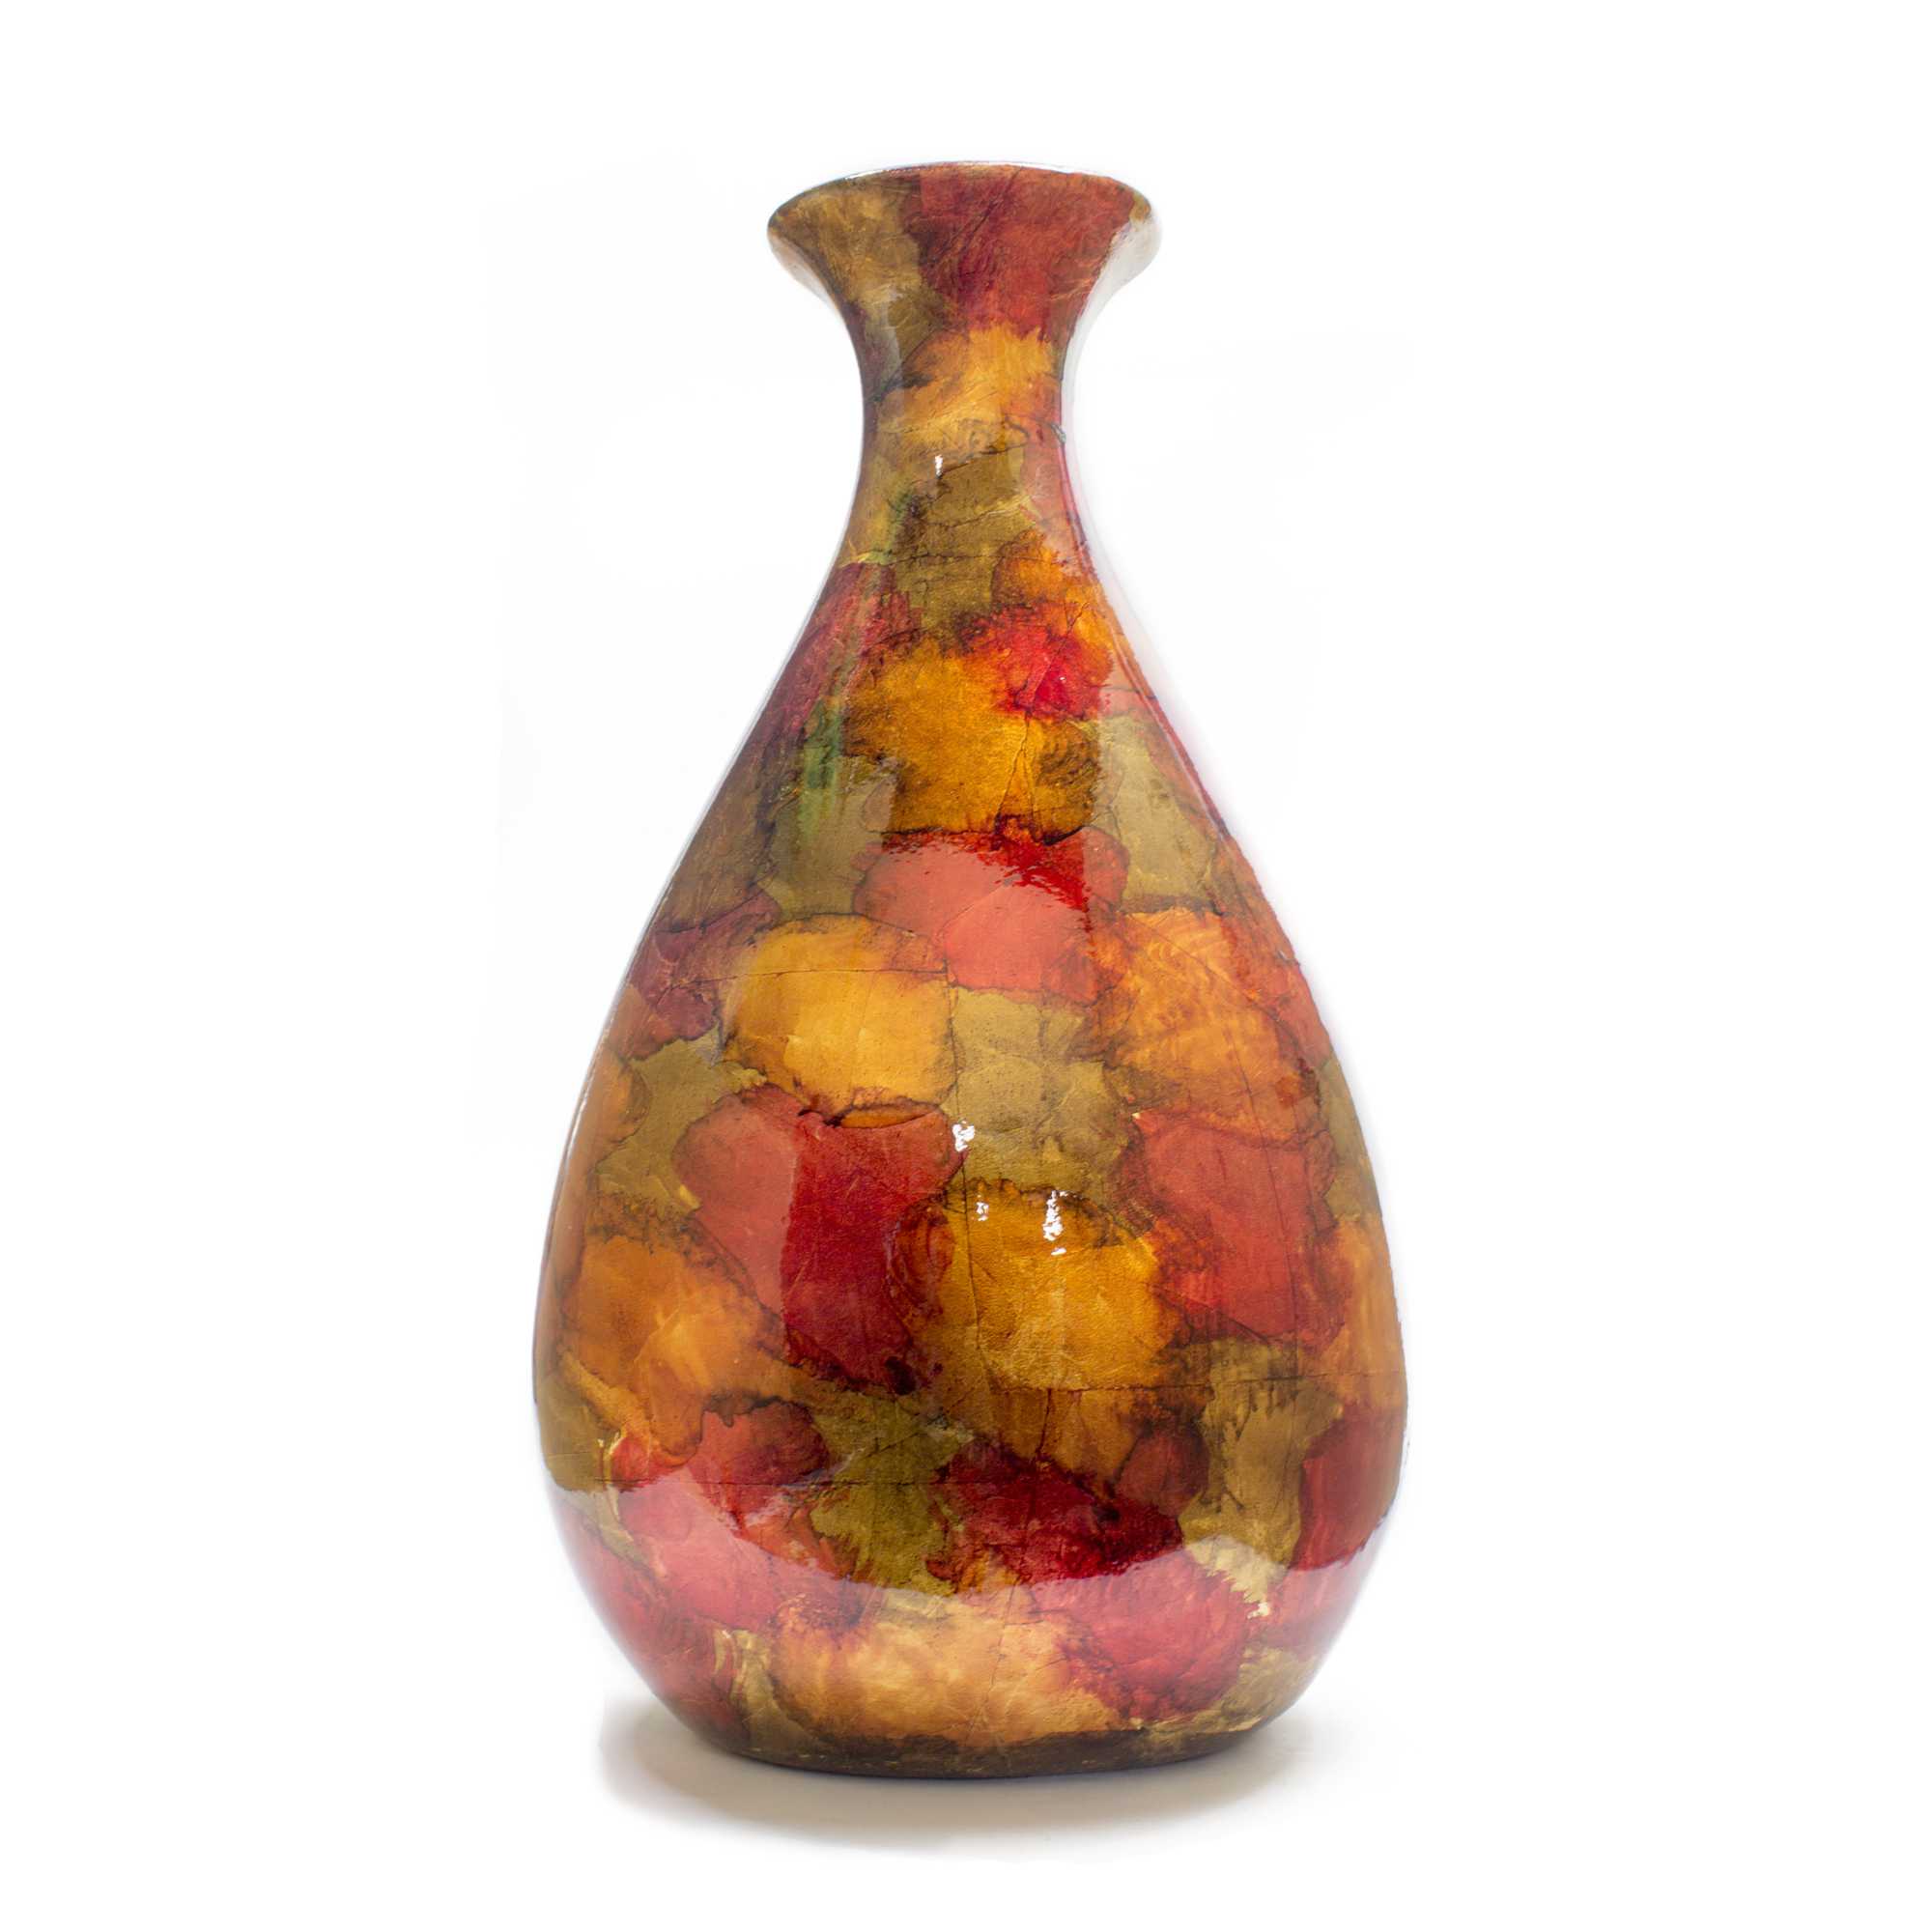 9" X 6.25" X 18.5" Copper Red and Gold Ceramic Floor Vase